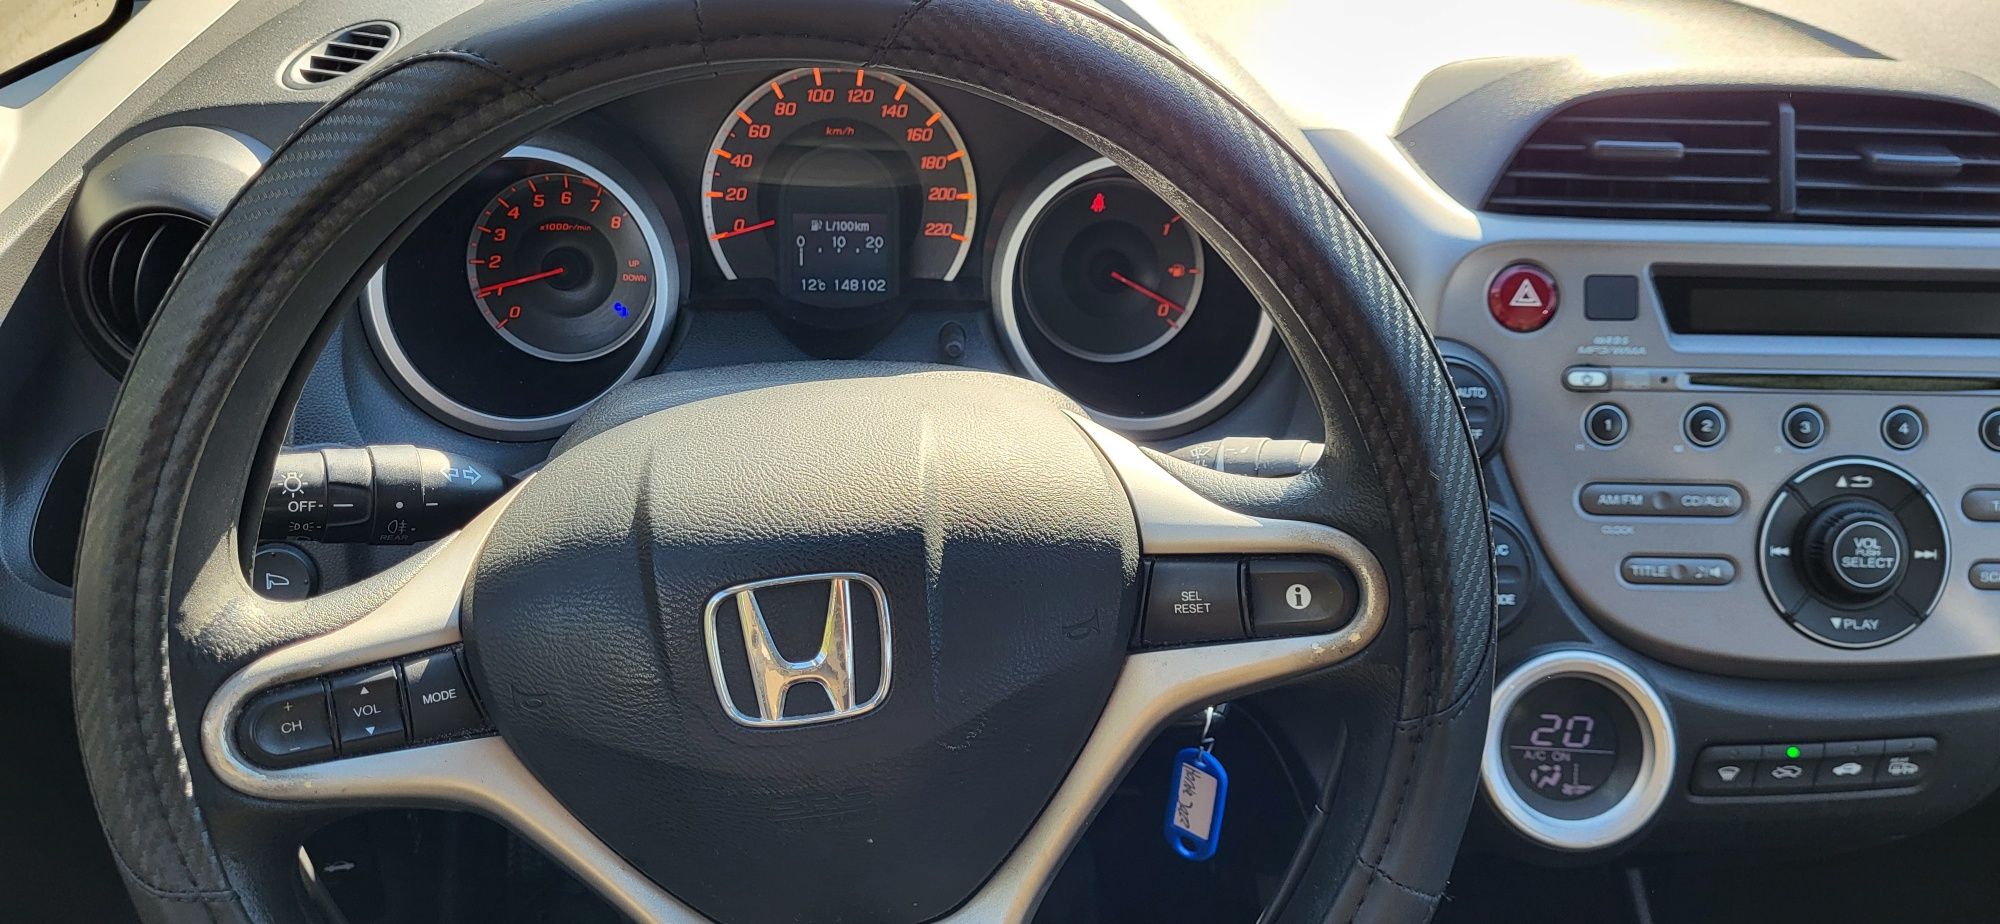 Honda Jazz 1.4 Benzyna 148tys.km  Klimatronic